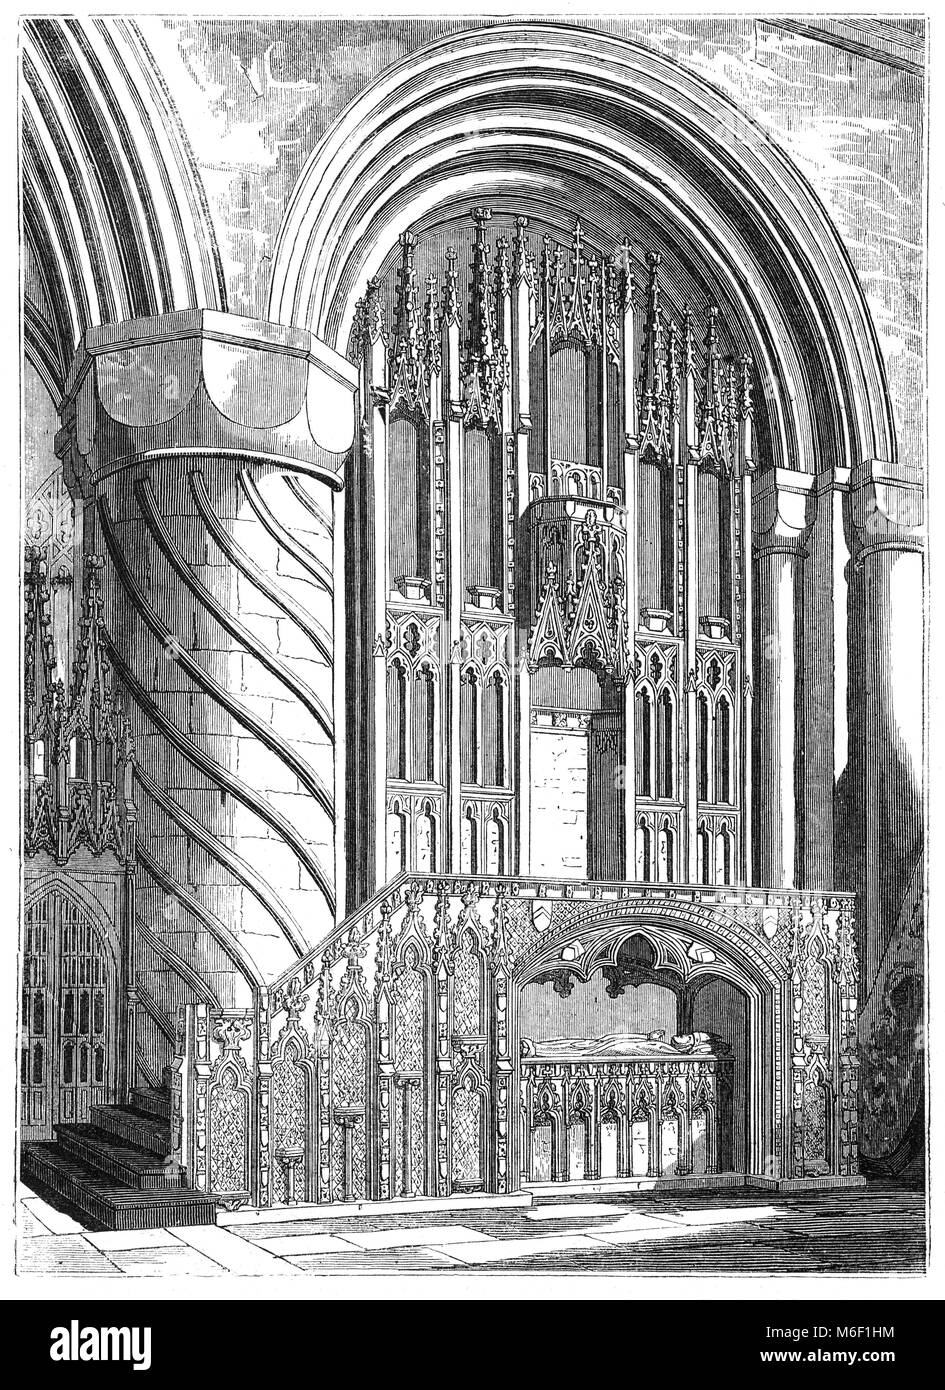 El trono del Obispo en la catedral de Durham románico normando, el hogar del Santuario de San Cuthbert. La actual catedral de la ciudad de Durham, Inglaterra, reemplazó el siglo 10 "iglesia blanca", construido como parte de una fundación monástica en Casa la Ermita de San Cuthbert de Lindisfarne. Foto de stock